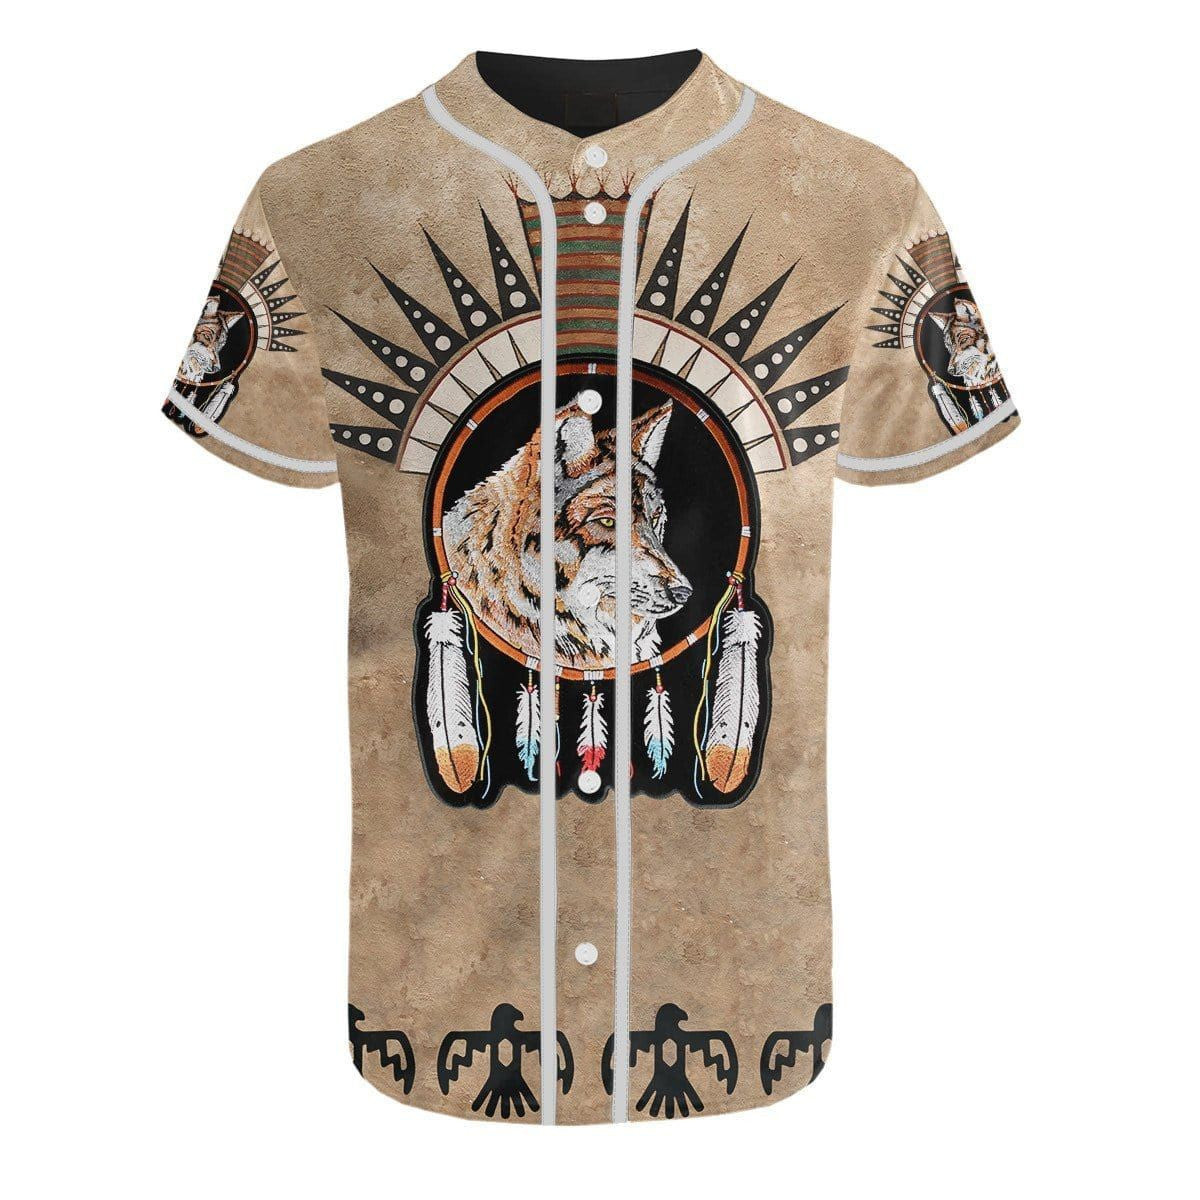 Native American Wolf Dreamcatcher Baseball Jersey, Unisex Jersey Shirt for Men Women